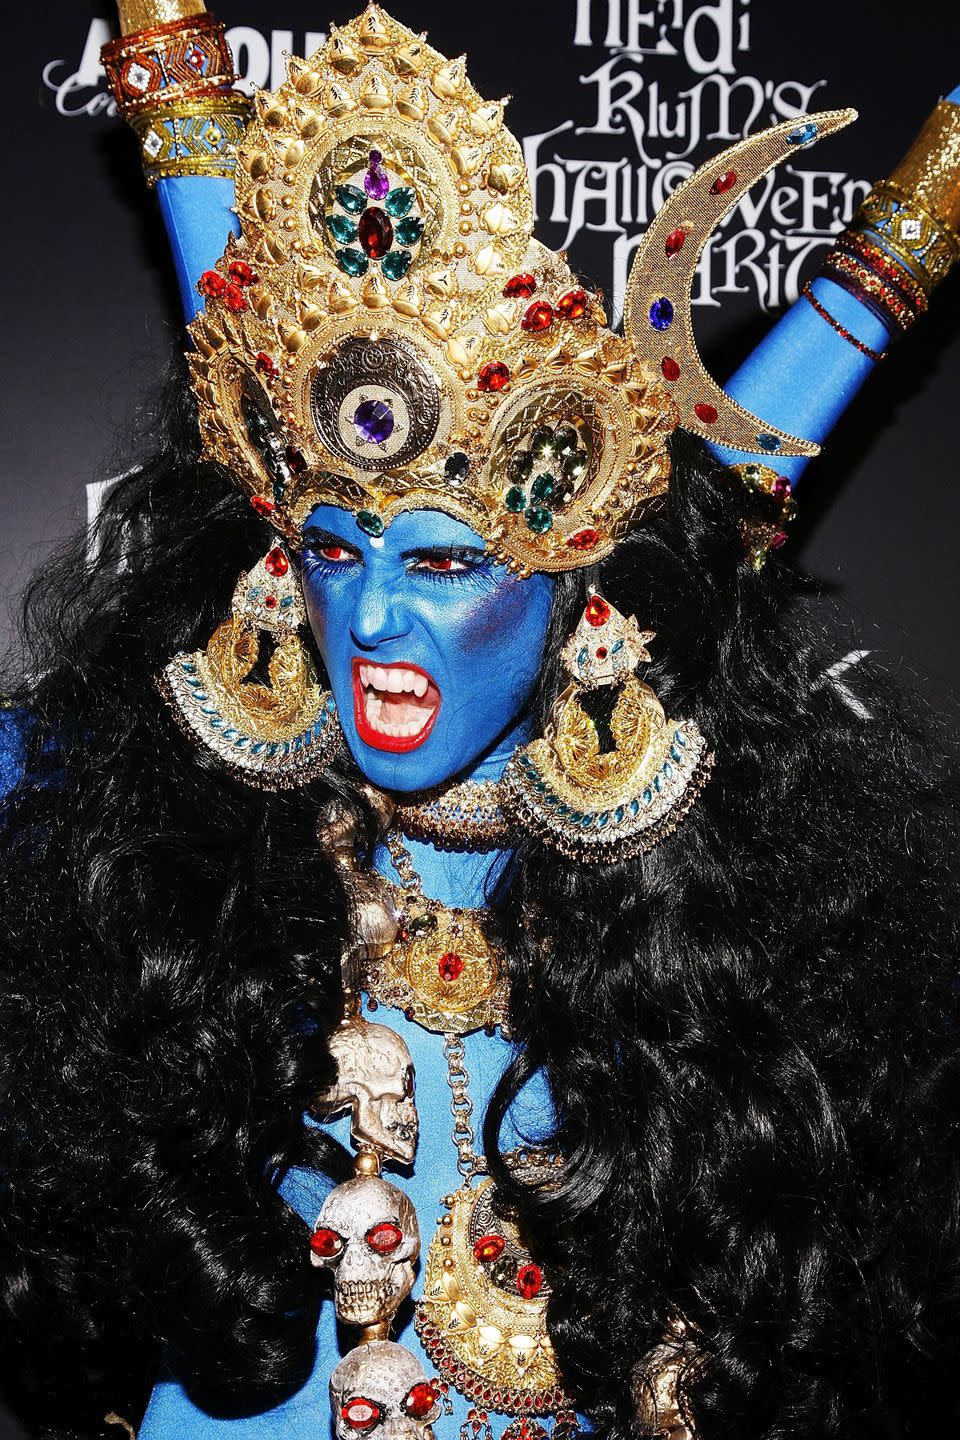 2008: Goddess Kali